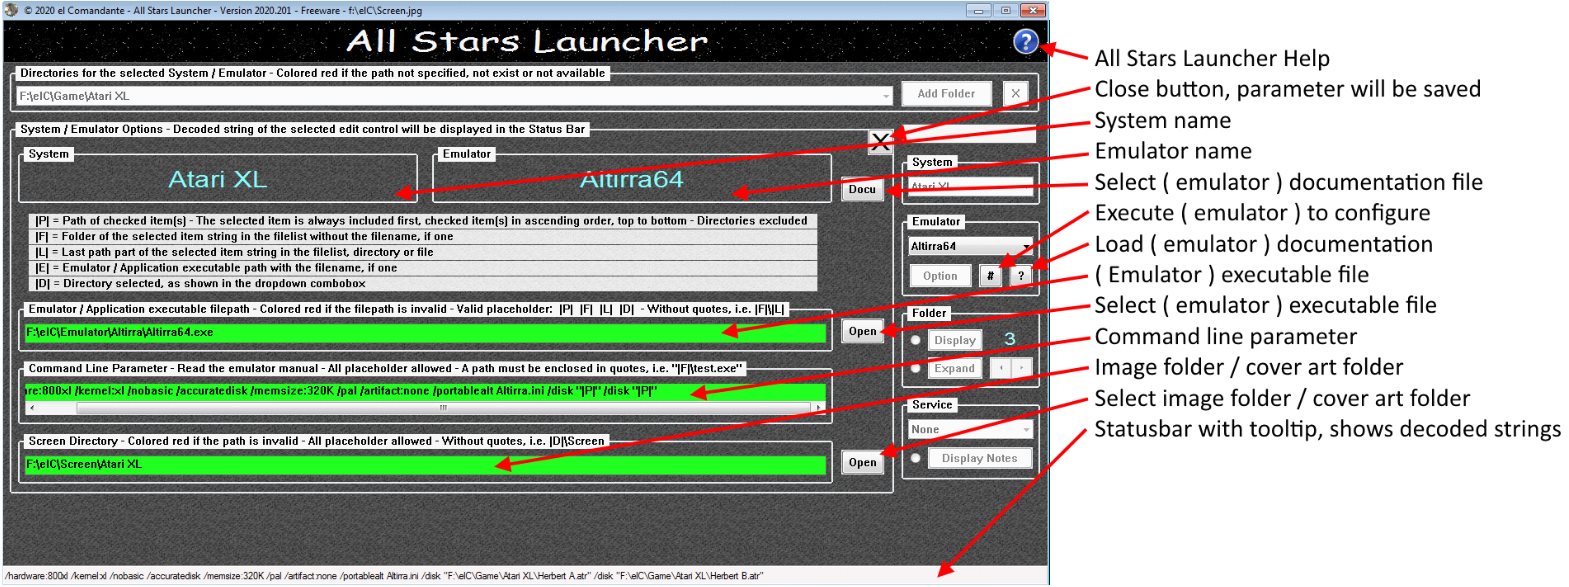 All Stars Launcher screenshot #2